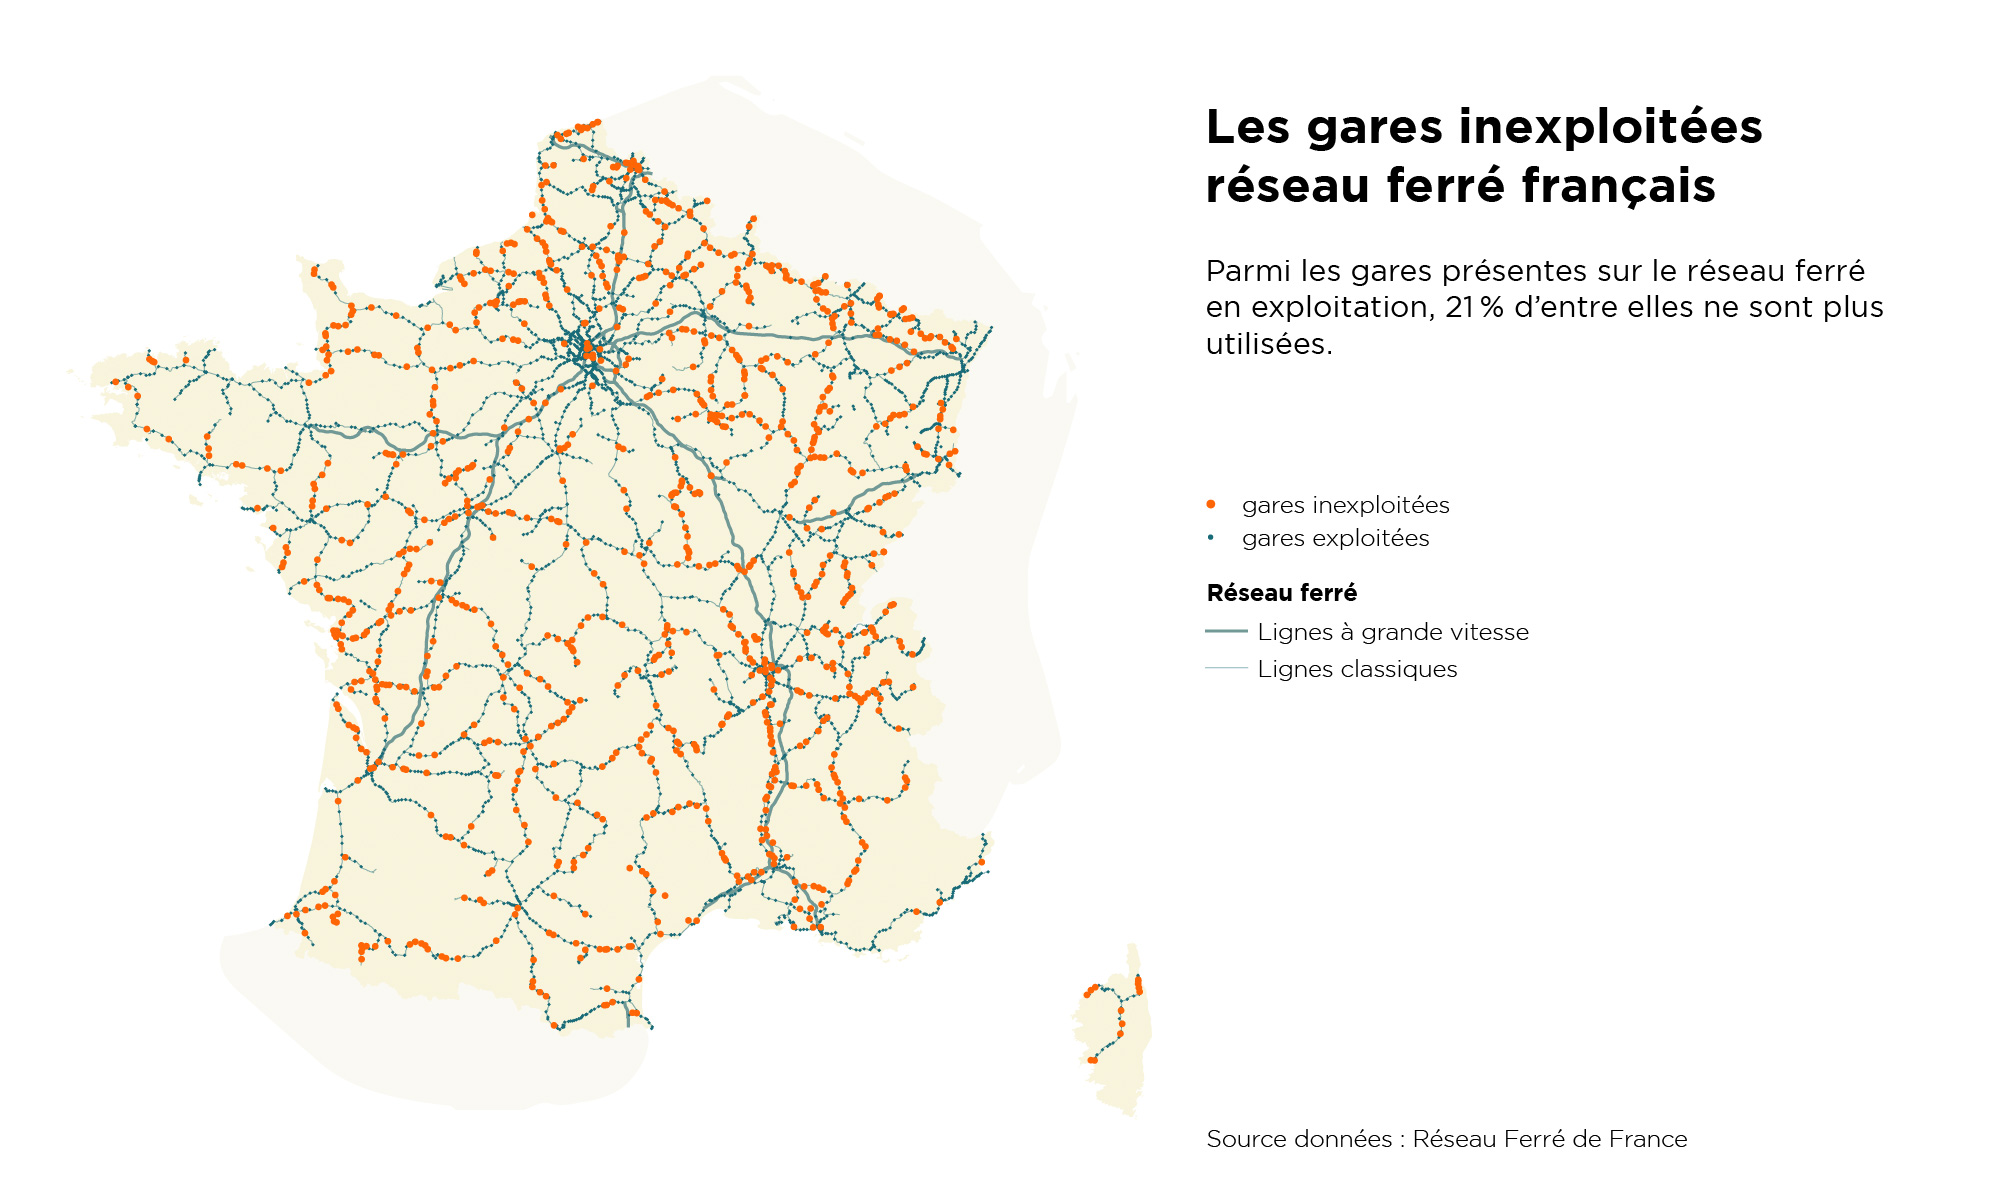 Les gares inexploitées du réseau ferré français